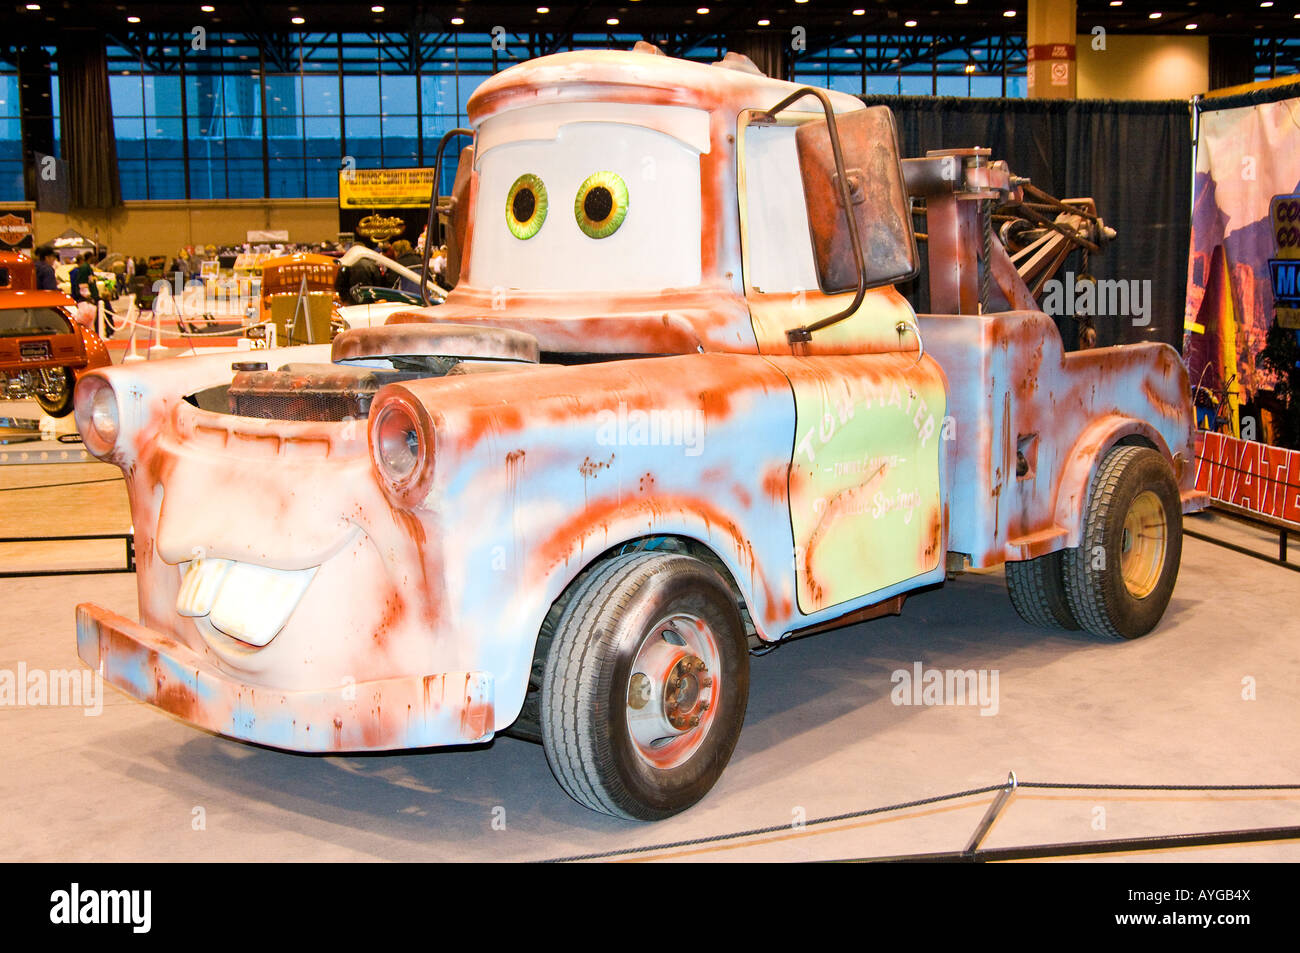 Abschleppwagen "Mater" vom Film Cars Stockfotografie - Alamy